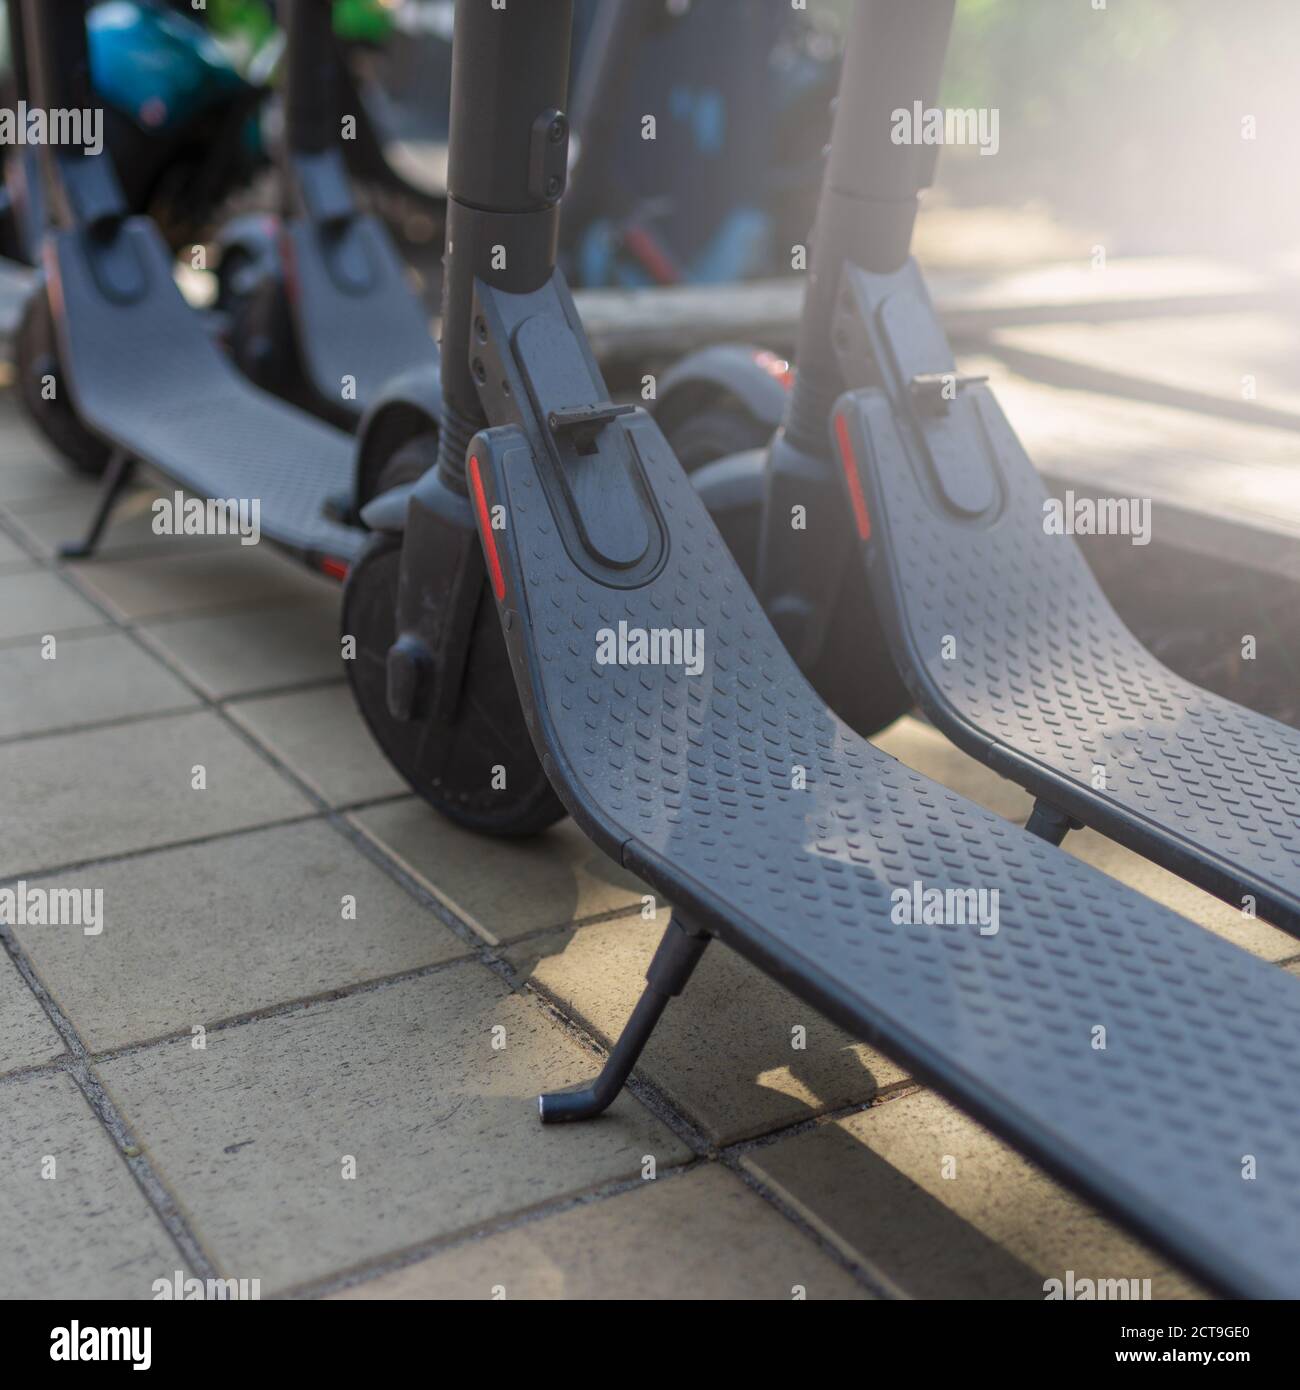 Transport urbain électrique: La rangée de lectures électriques pour faire du scooter des vélos avec des accumulateurs dans le centre d'une ville. Banque D'Images